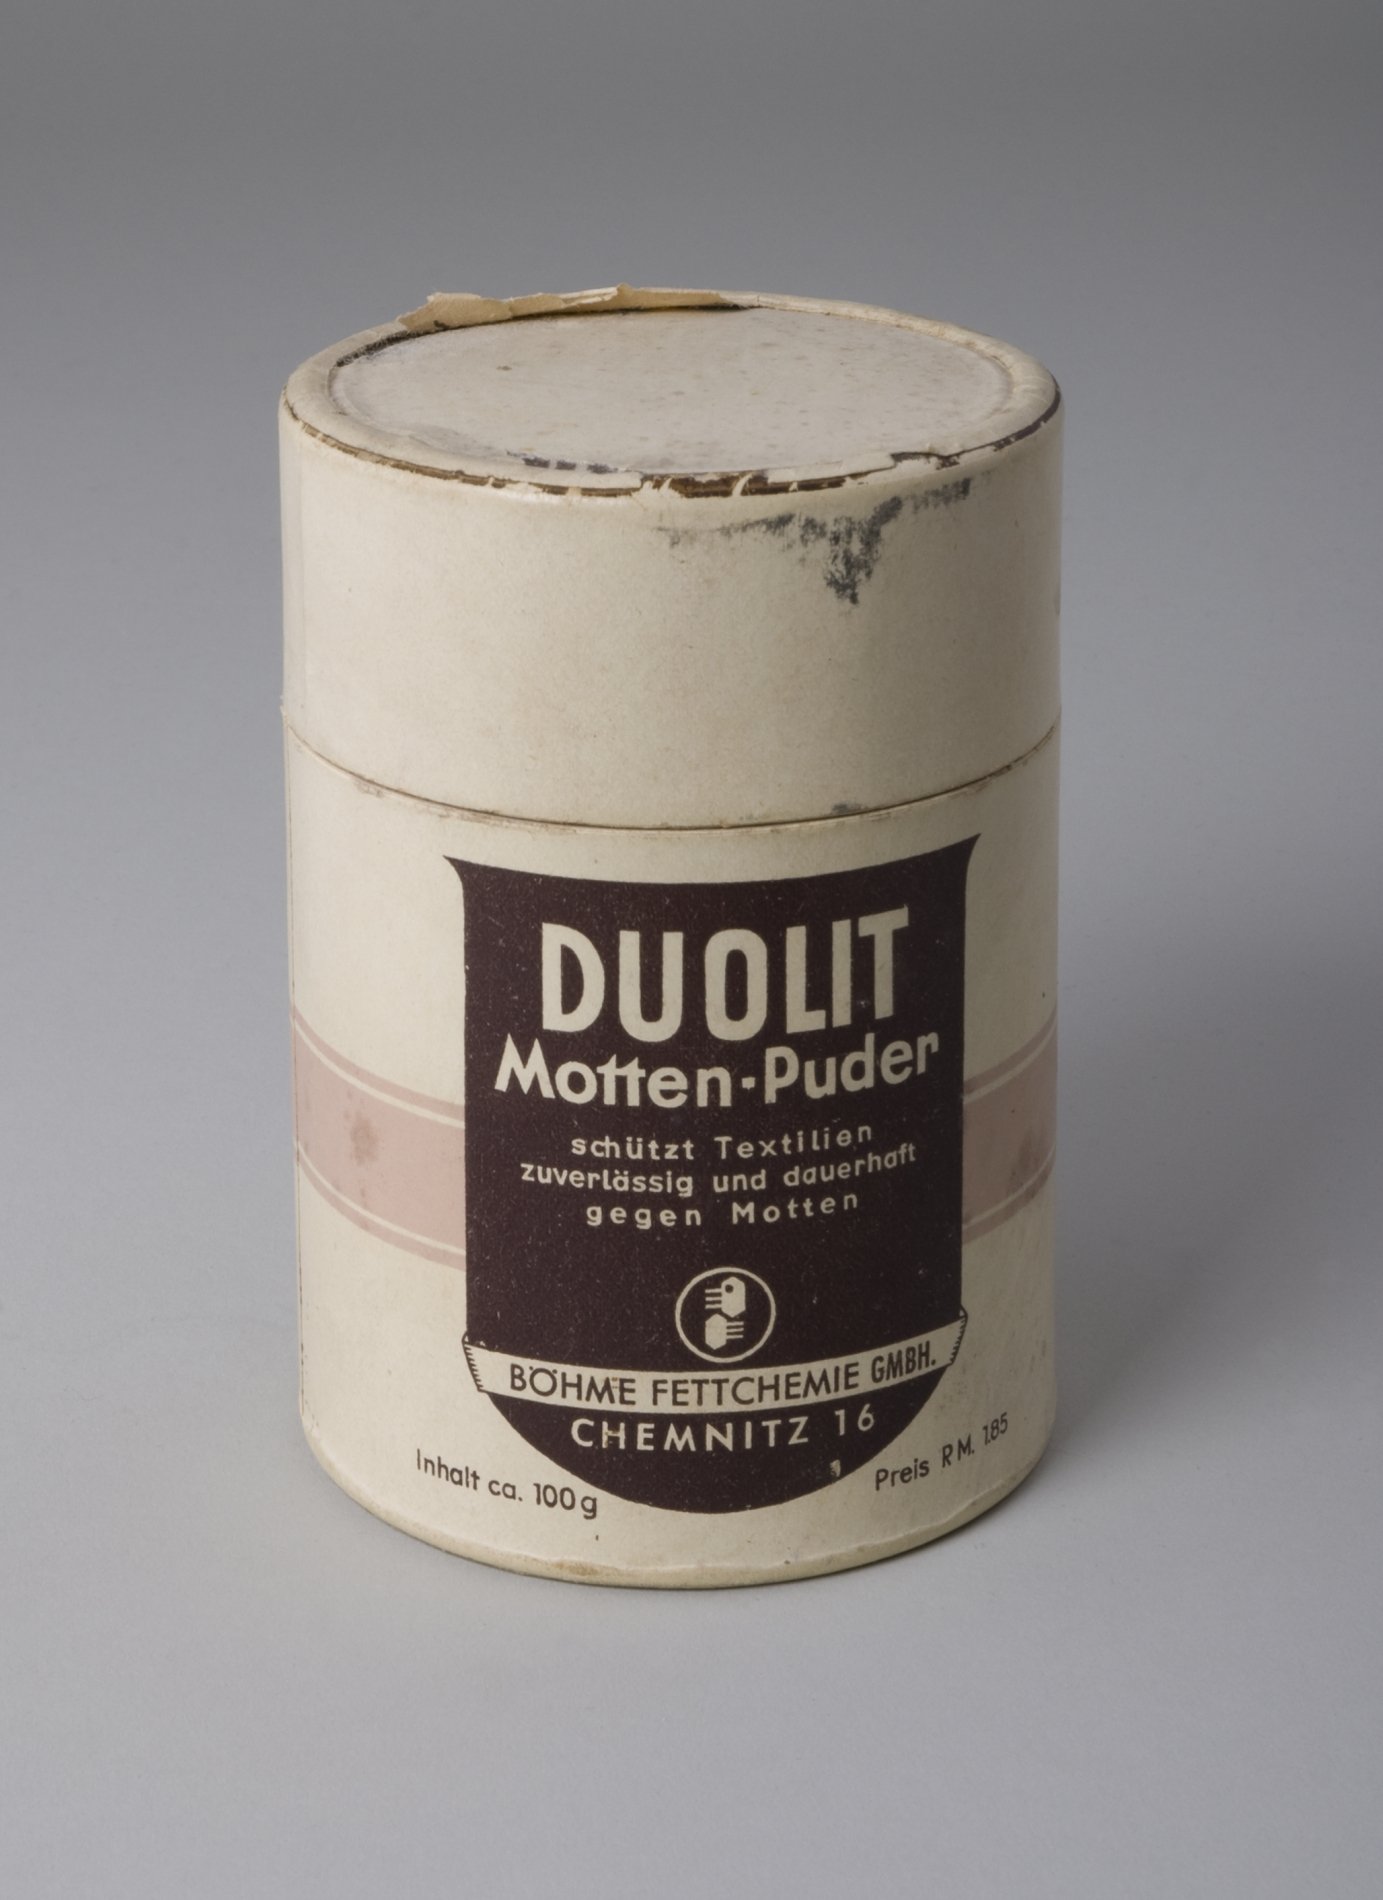 Pappdose "DUOLIT Motten-Puder" (Stiftung Domäne Dahlem - Landgut und Museum, Weiternutzung nur mit Genehmigung des Museums CC BY-NC-SA)